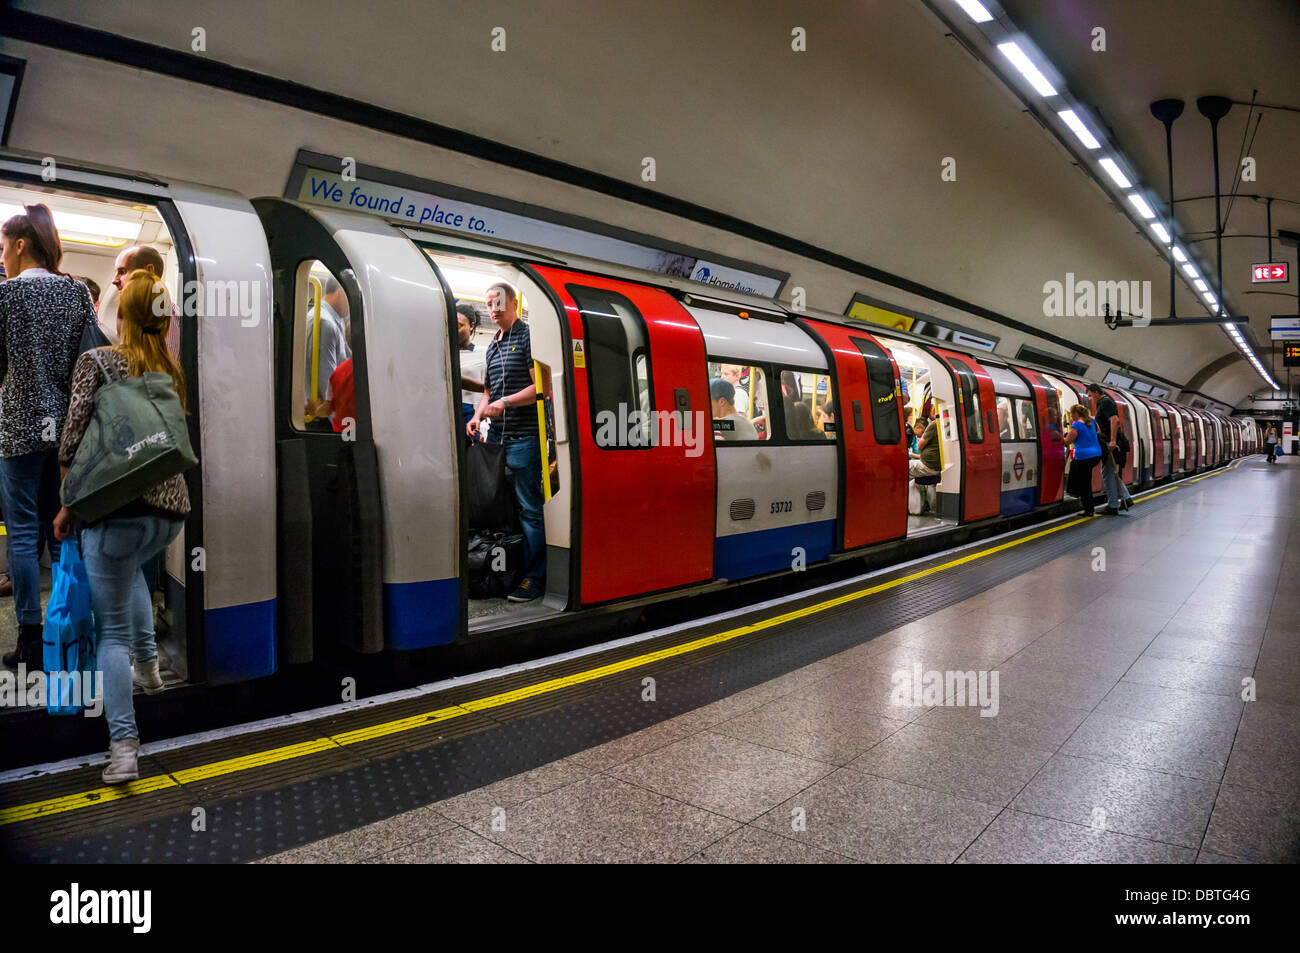 London Underground tube train - passagers / banlieusards chariots. Embarquement Plate-forme vide avec le train sur le point de quitter la station. Angleterre, Royaume-Uni. Banque D'Images